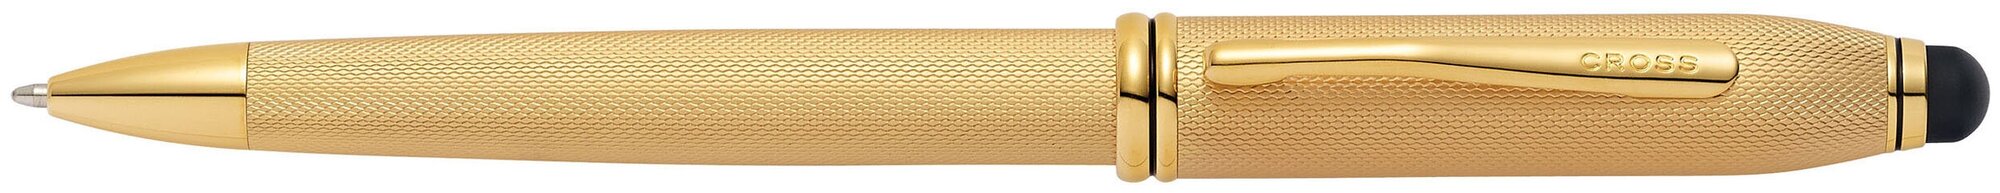 Ручка шариковая Cross Townsend Stylus со стилусом 8 мм, латунь/позолота 23К с алмазной гравировкой, цвет золотистый (AT0042-42)